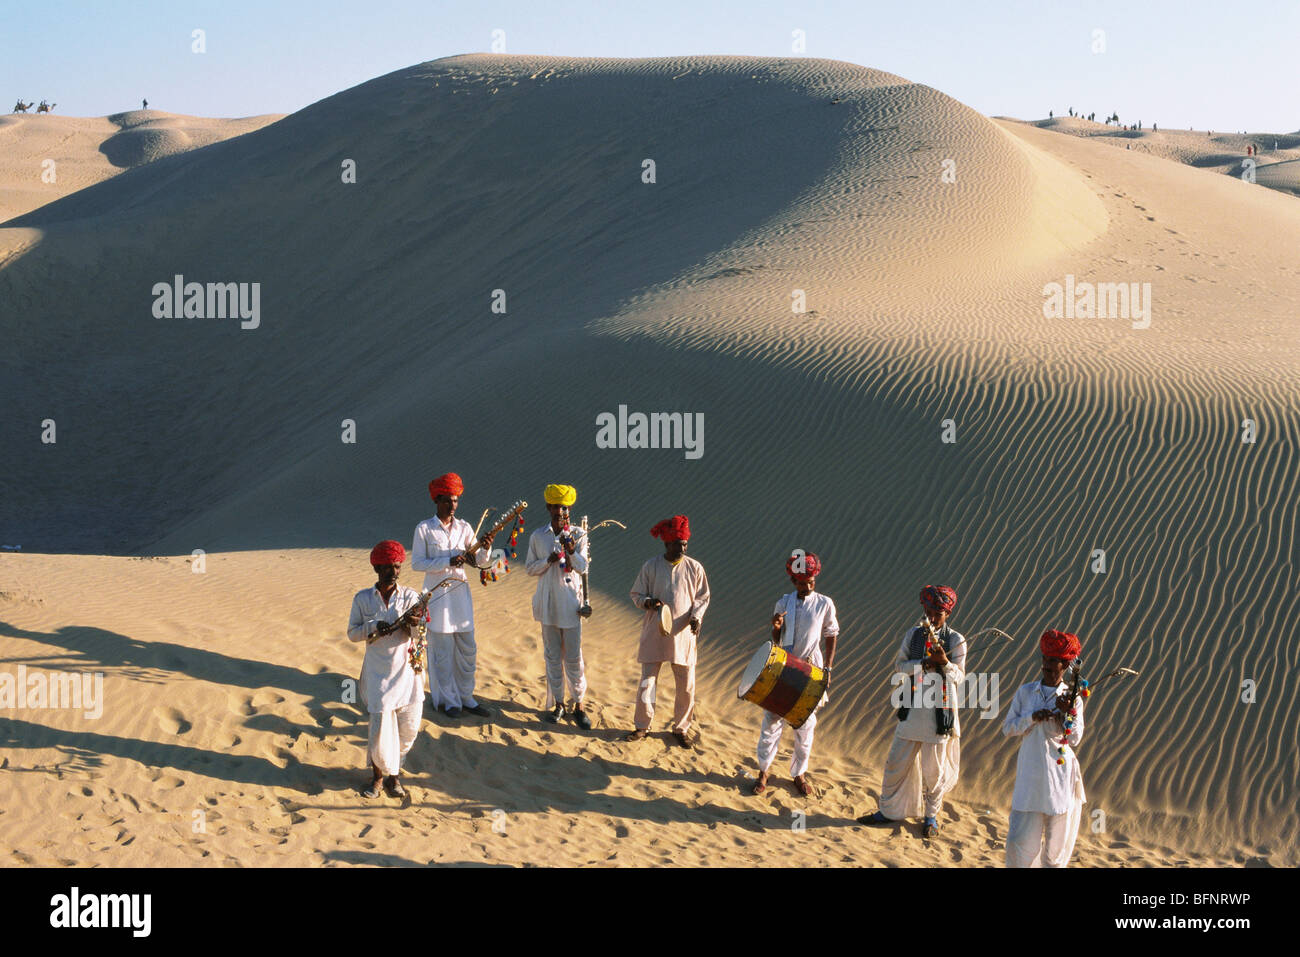 Rajasthani musiciens jouant de la musique dans les dunes de sable de sam ; Thar désert ; Jaisalmer ; Rajasthan ; Inde ; asie Banque D'Images